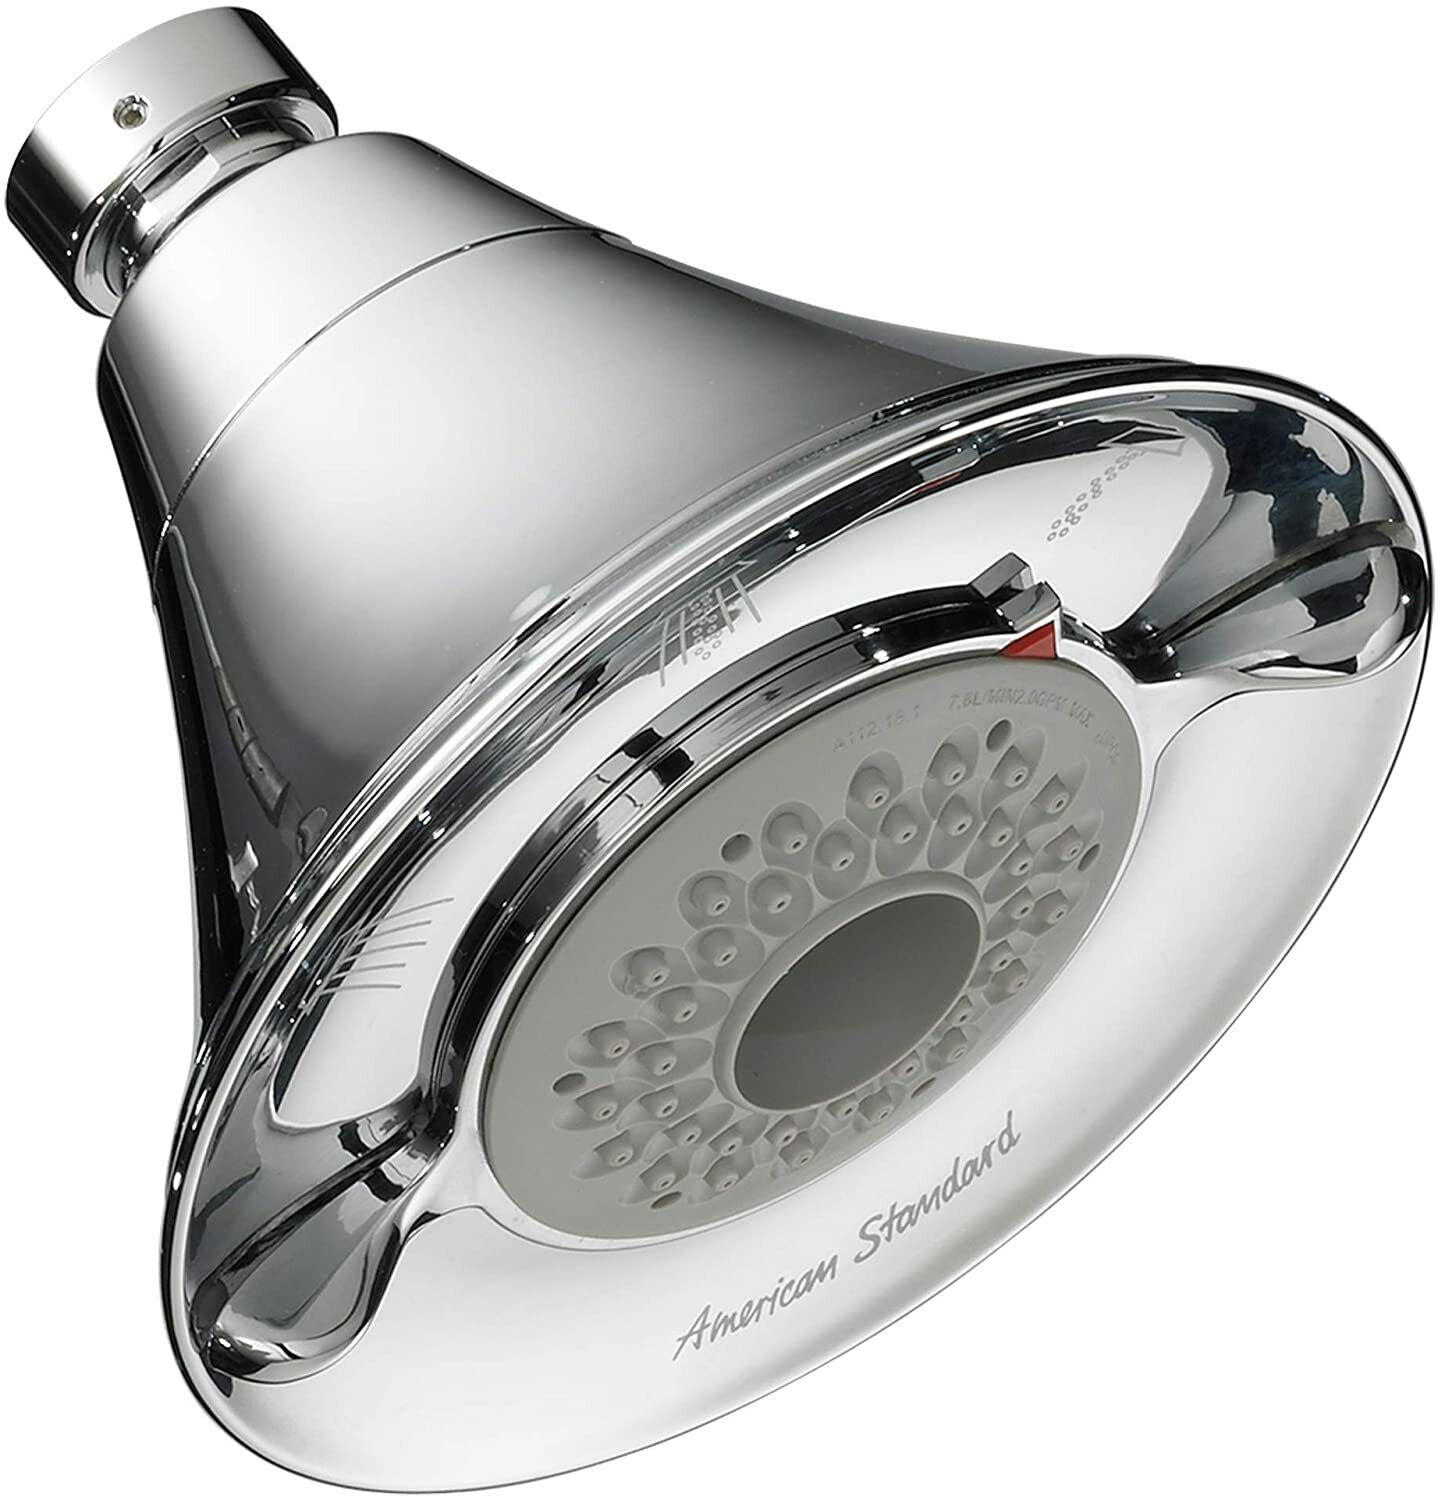 FloWise Shower Head Vandal Resistant Water Saving Chrome American Standard